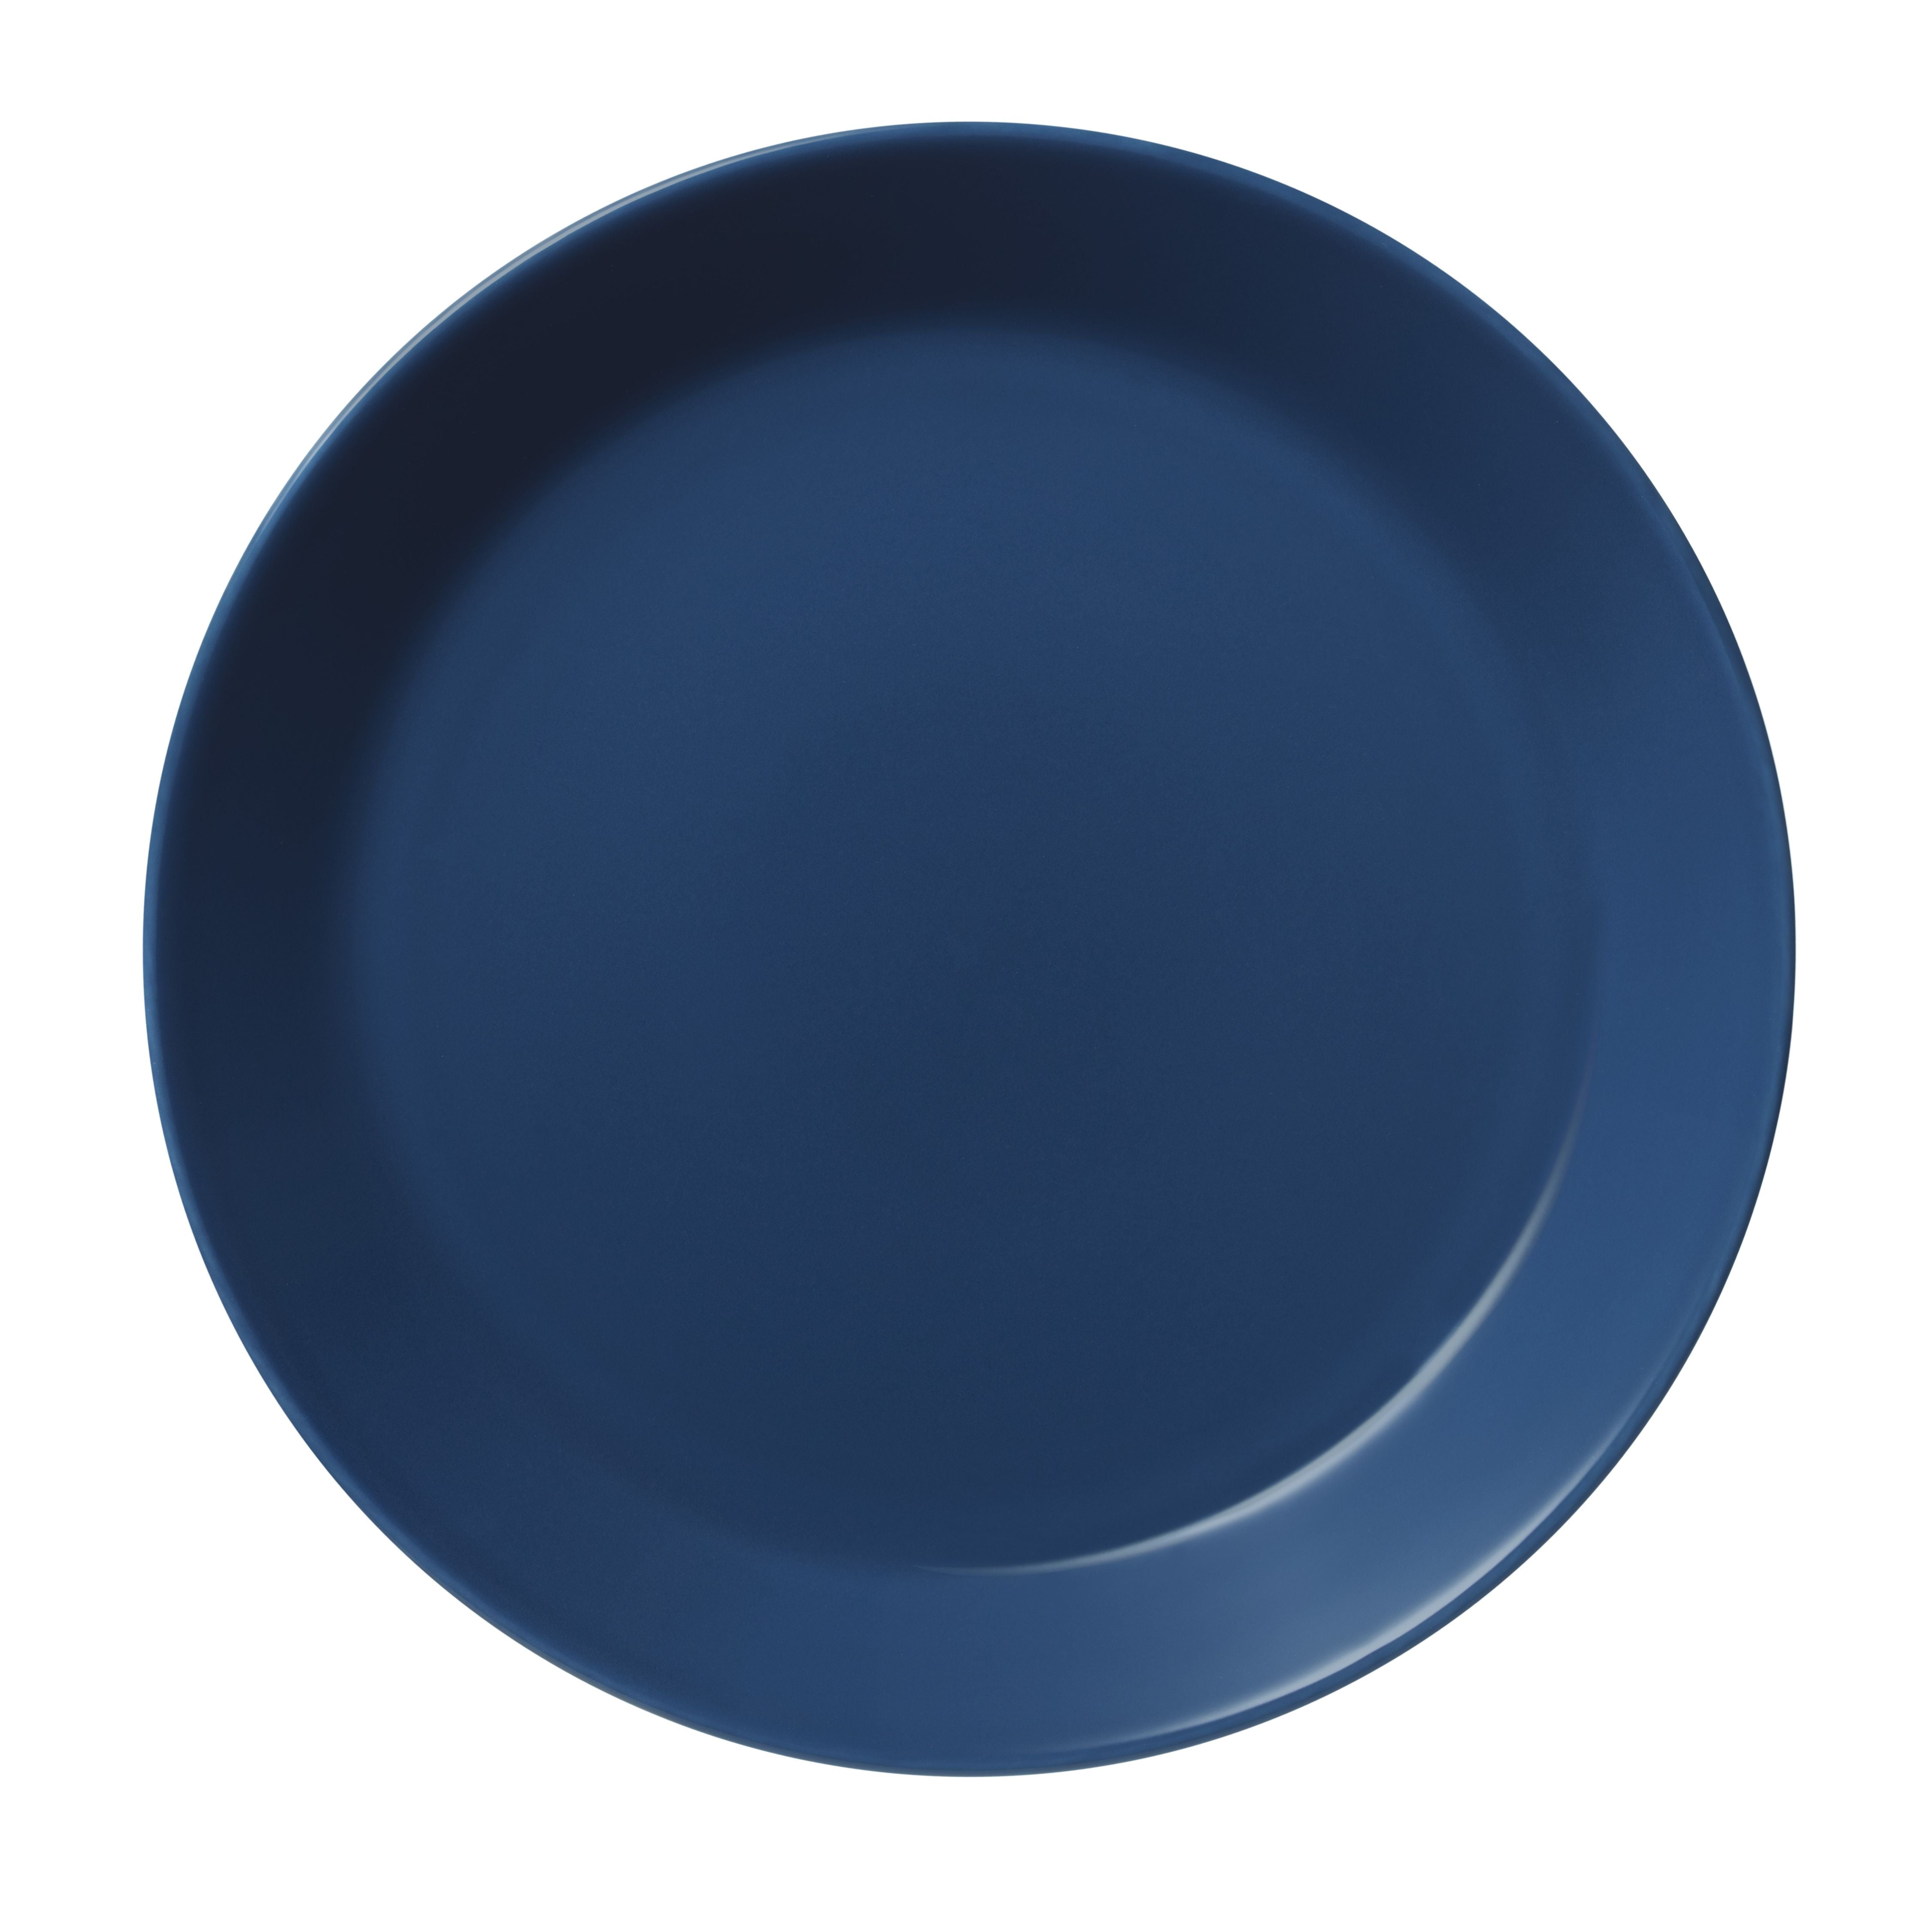 Iittala teema plate 23cm, vintage blå